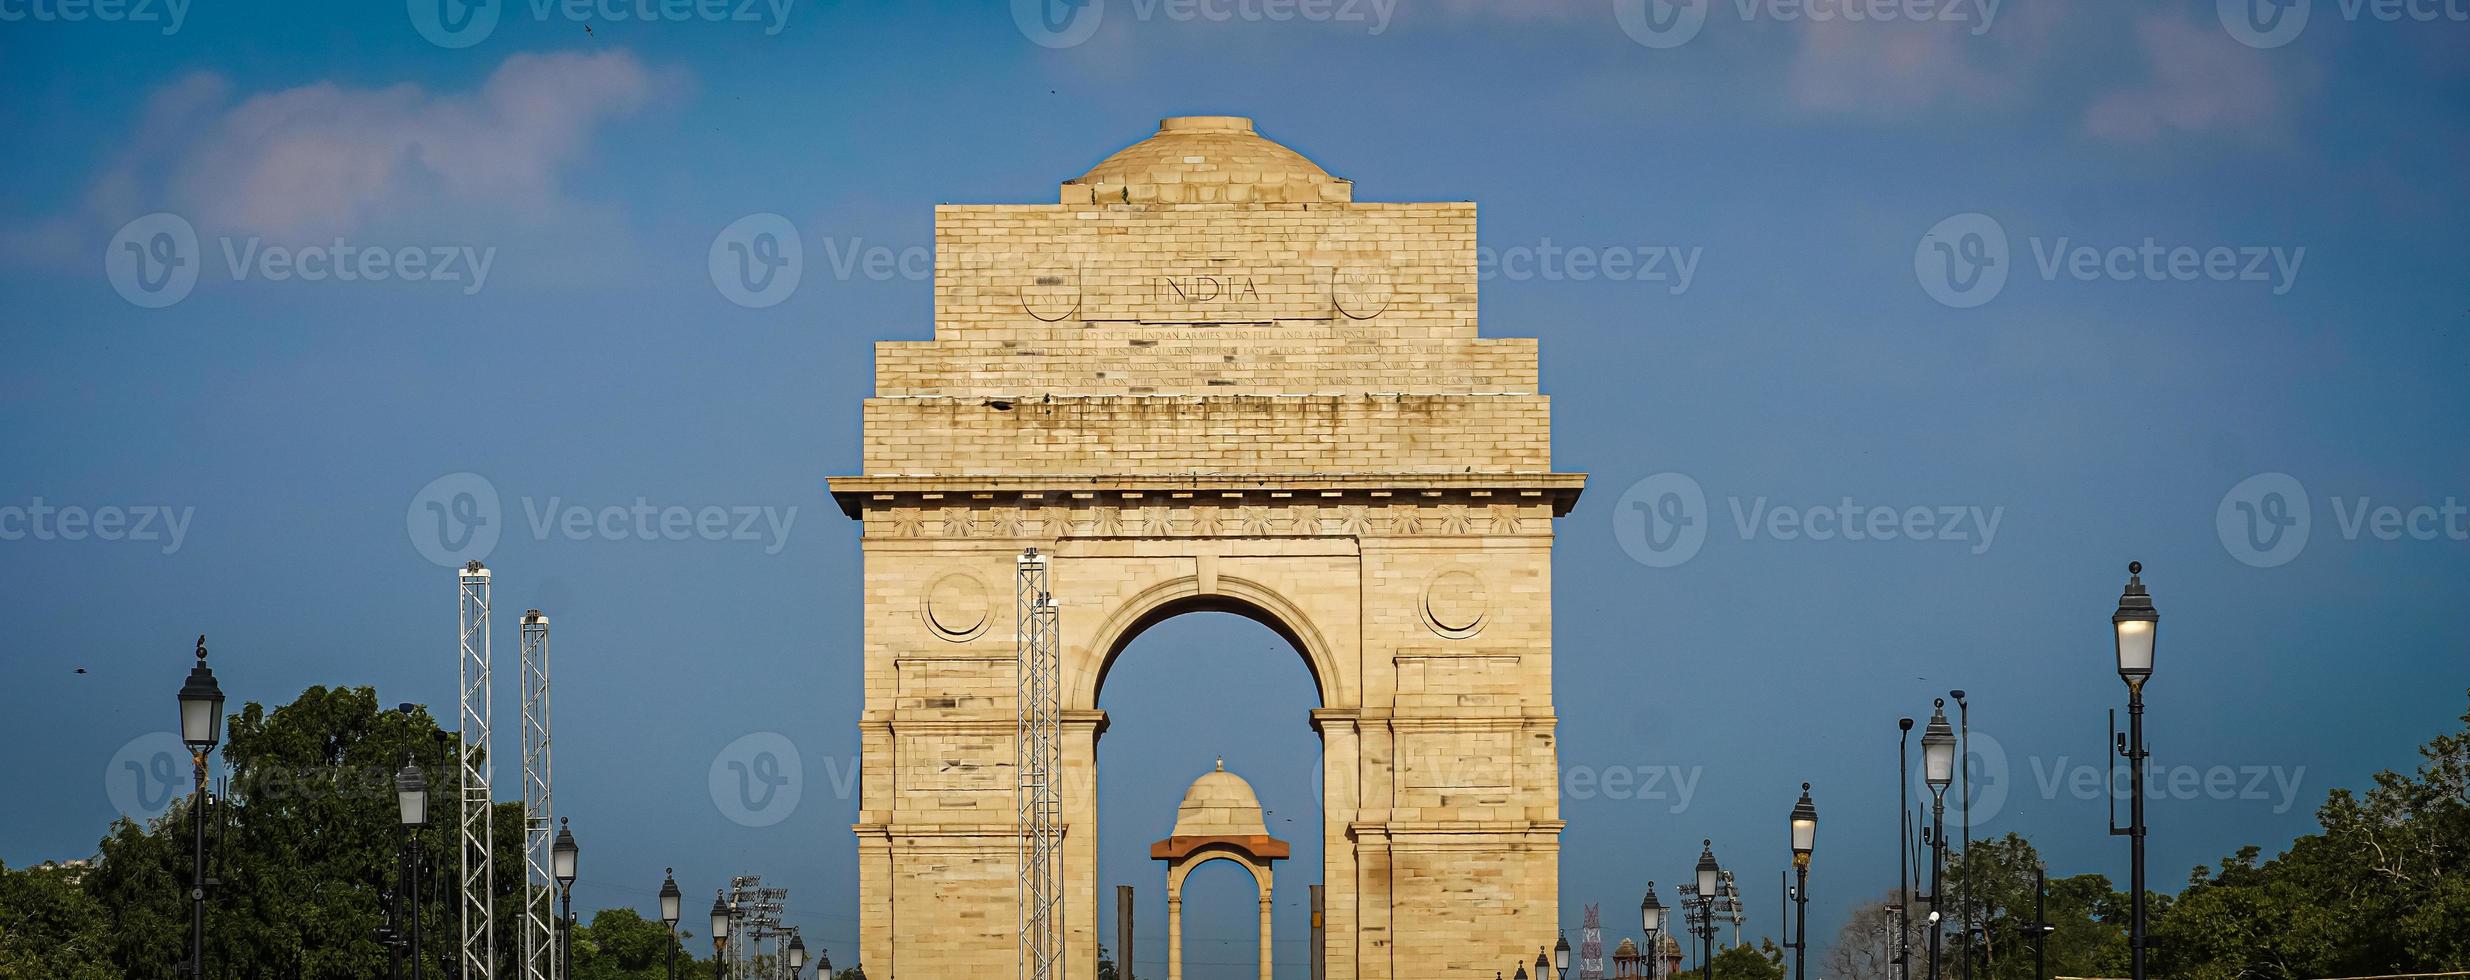 India portón de Delhi en India foto